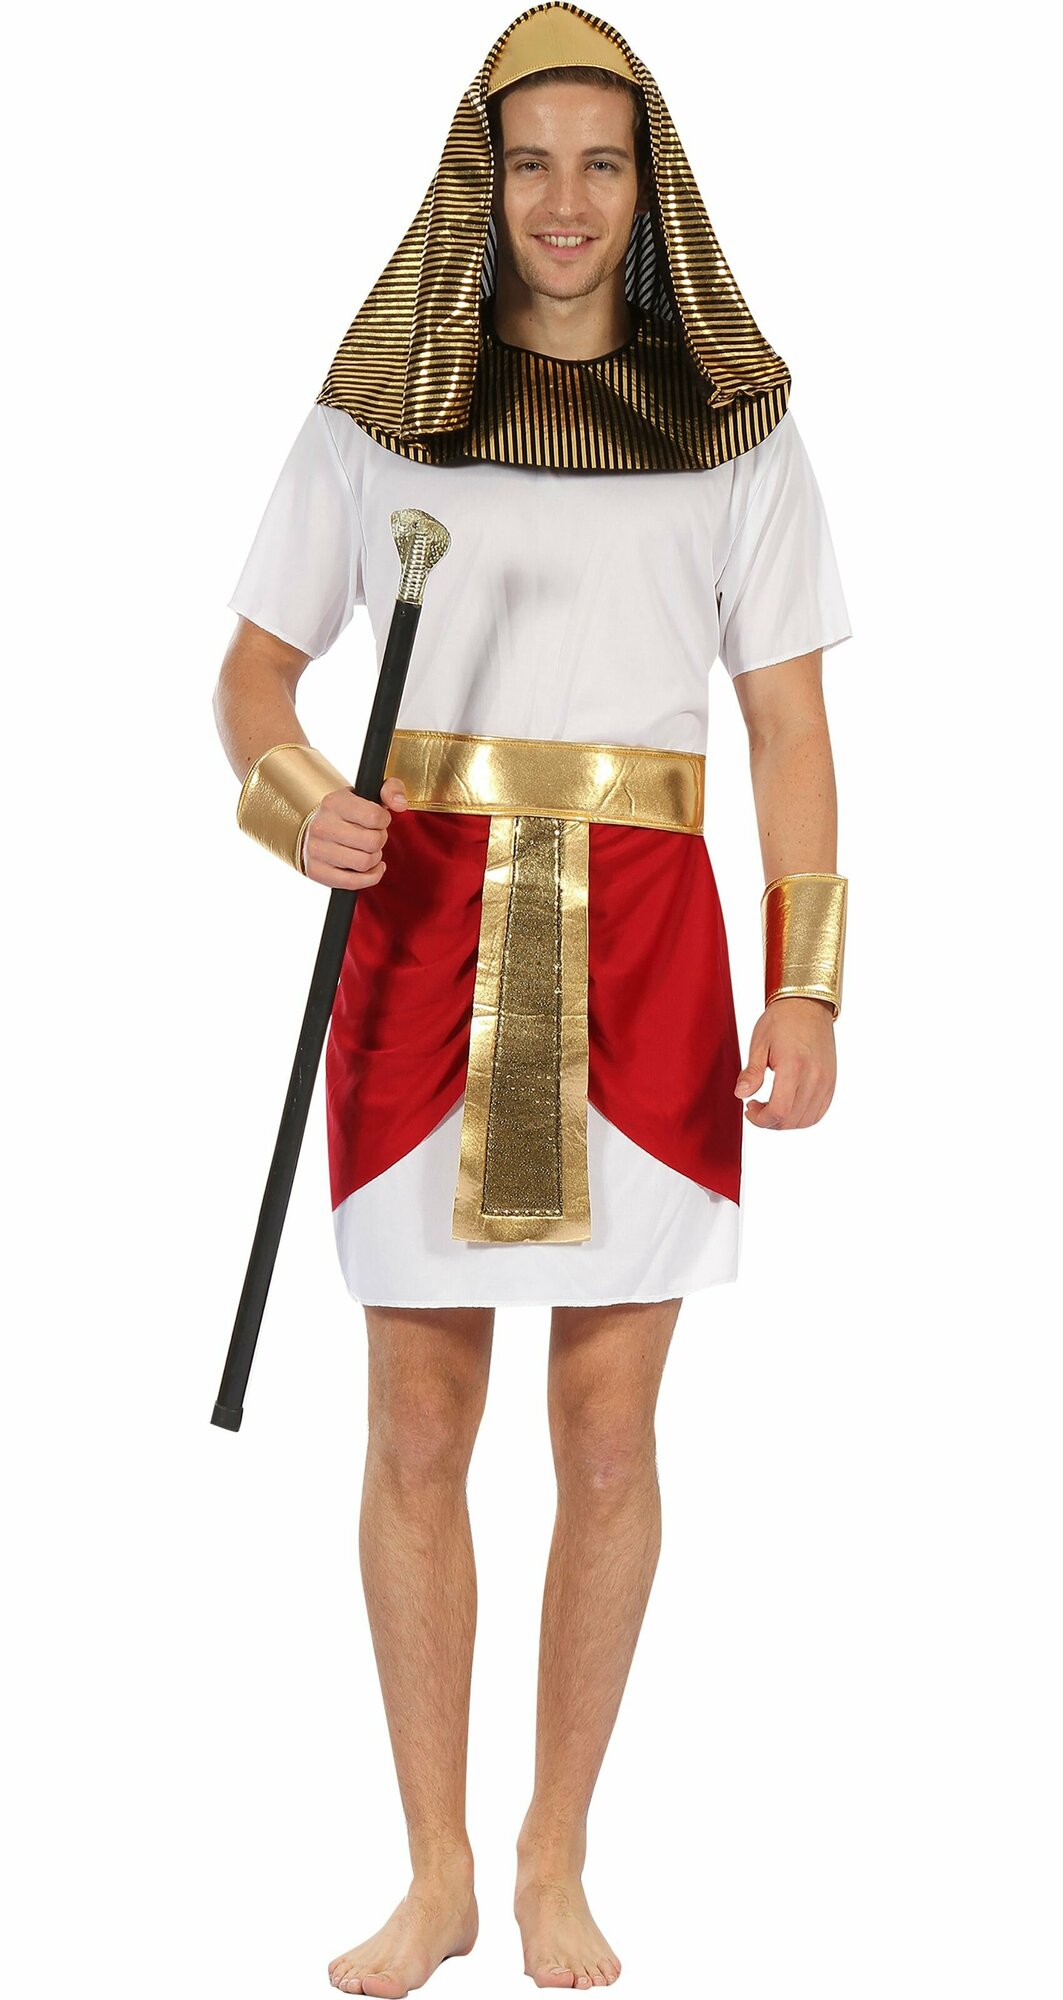 Карнавальный костюм Фараон египетский мужской взрослый